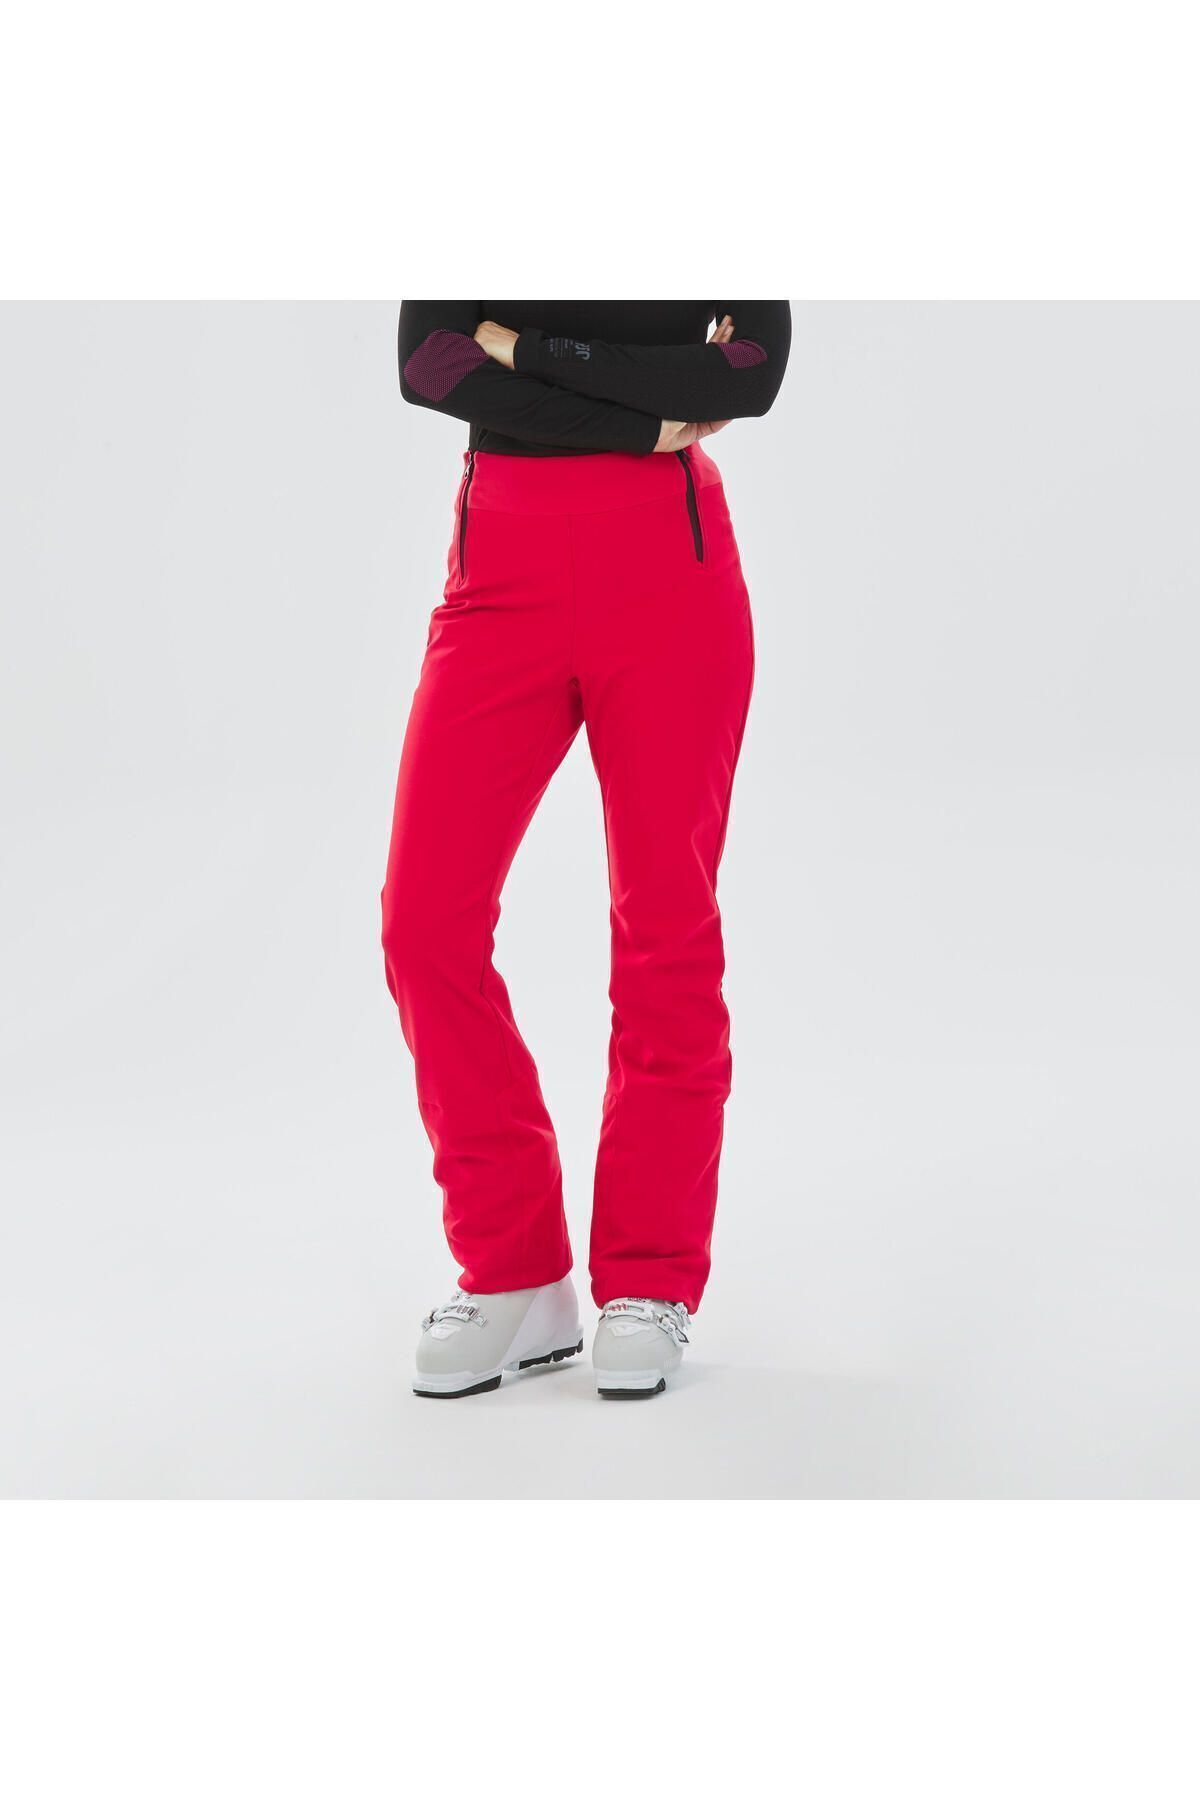 Decathlon Kadın Kayak Pantolonu - Kırmızı - 500